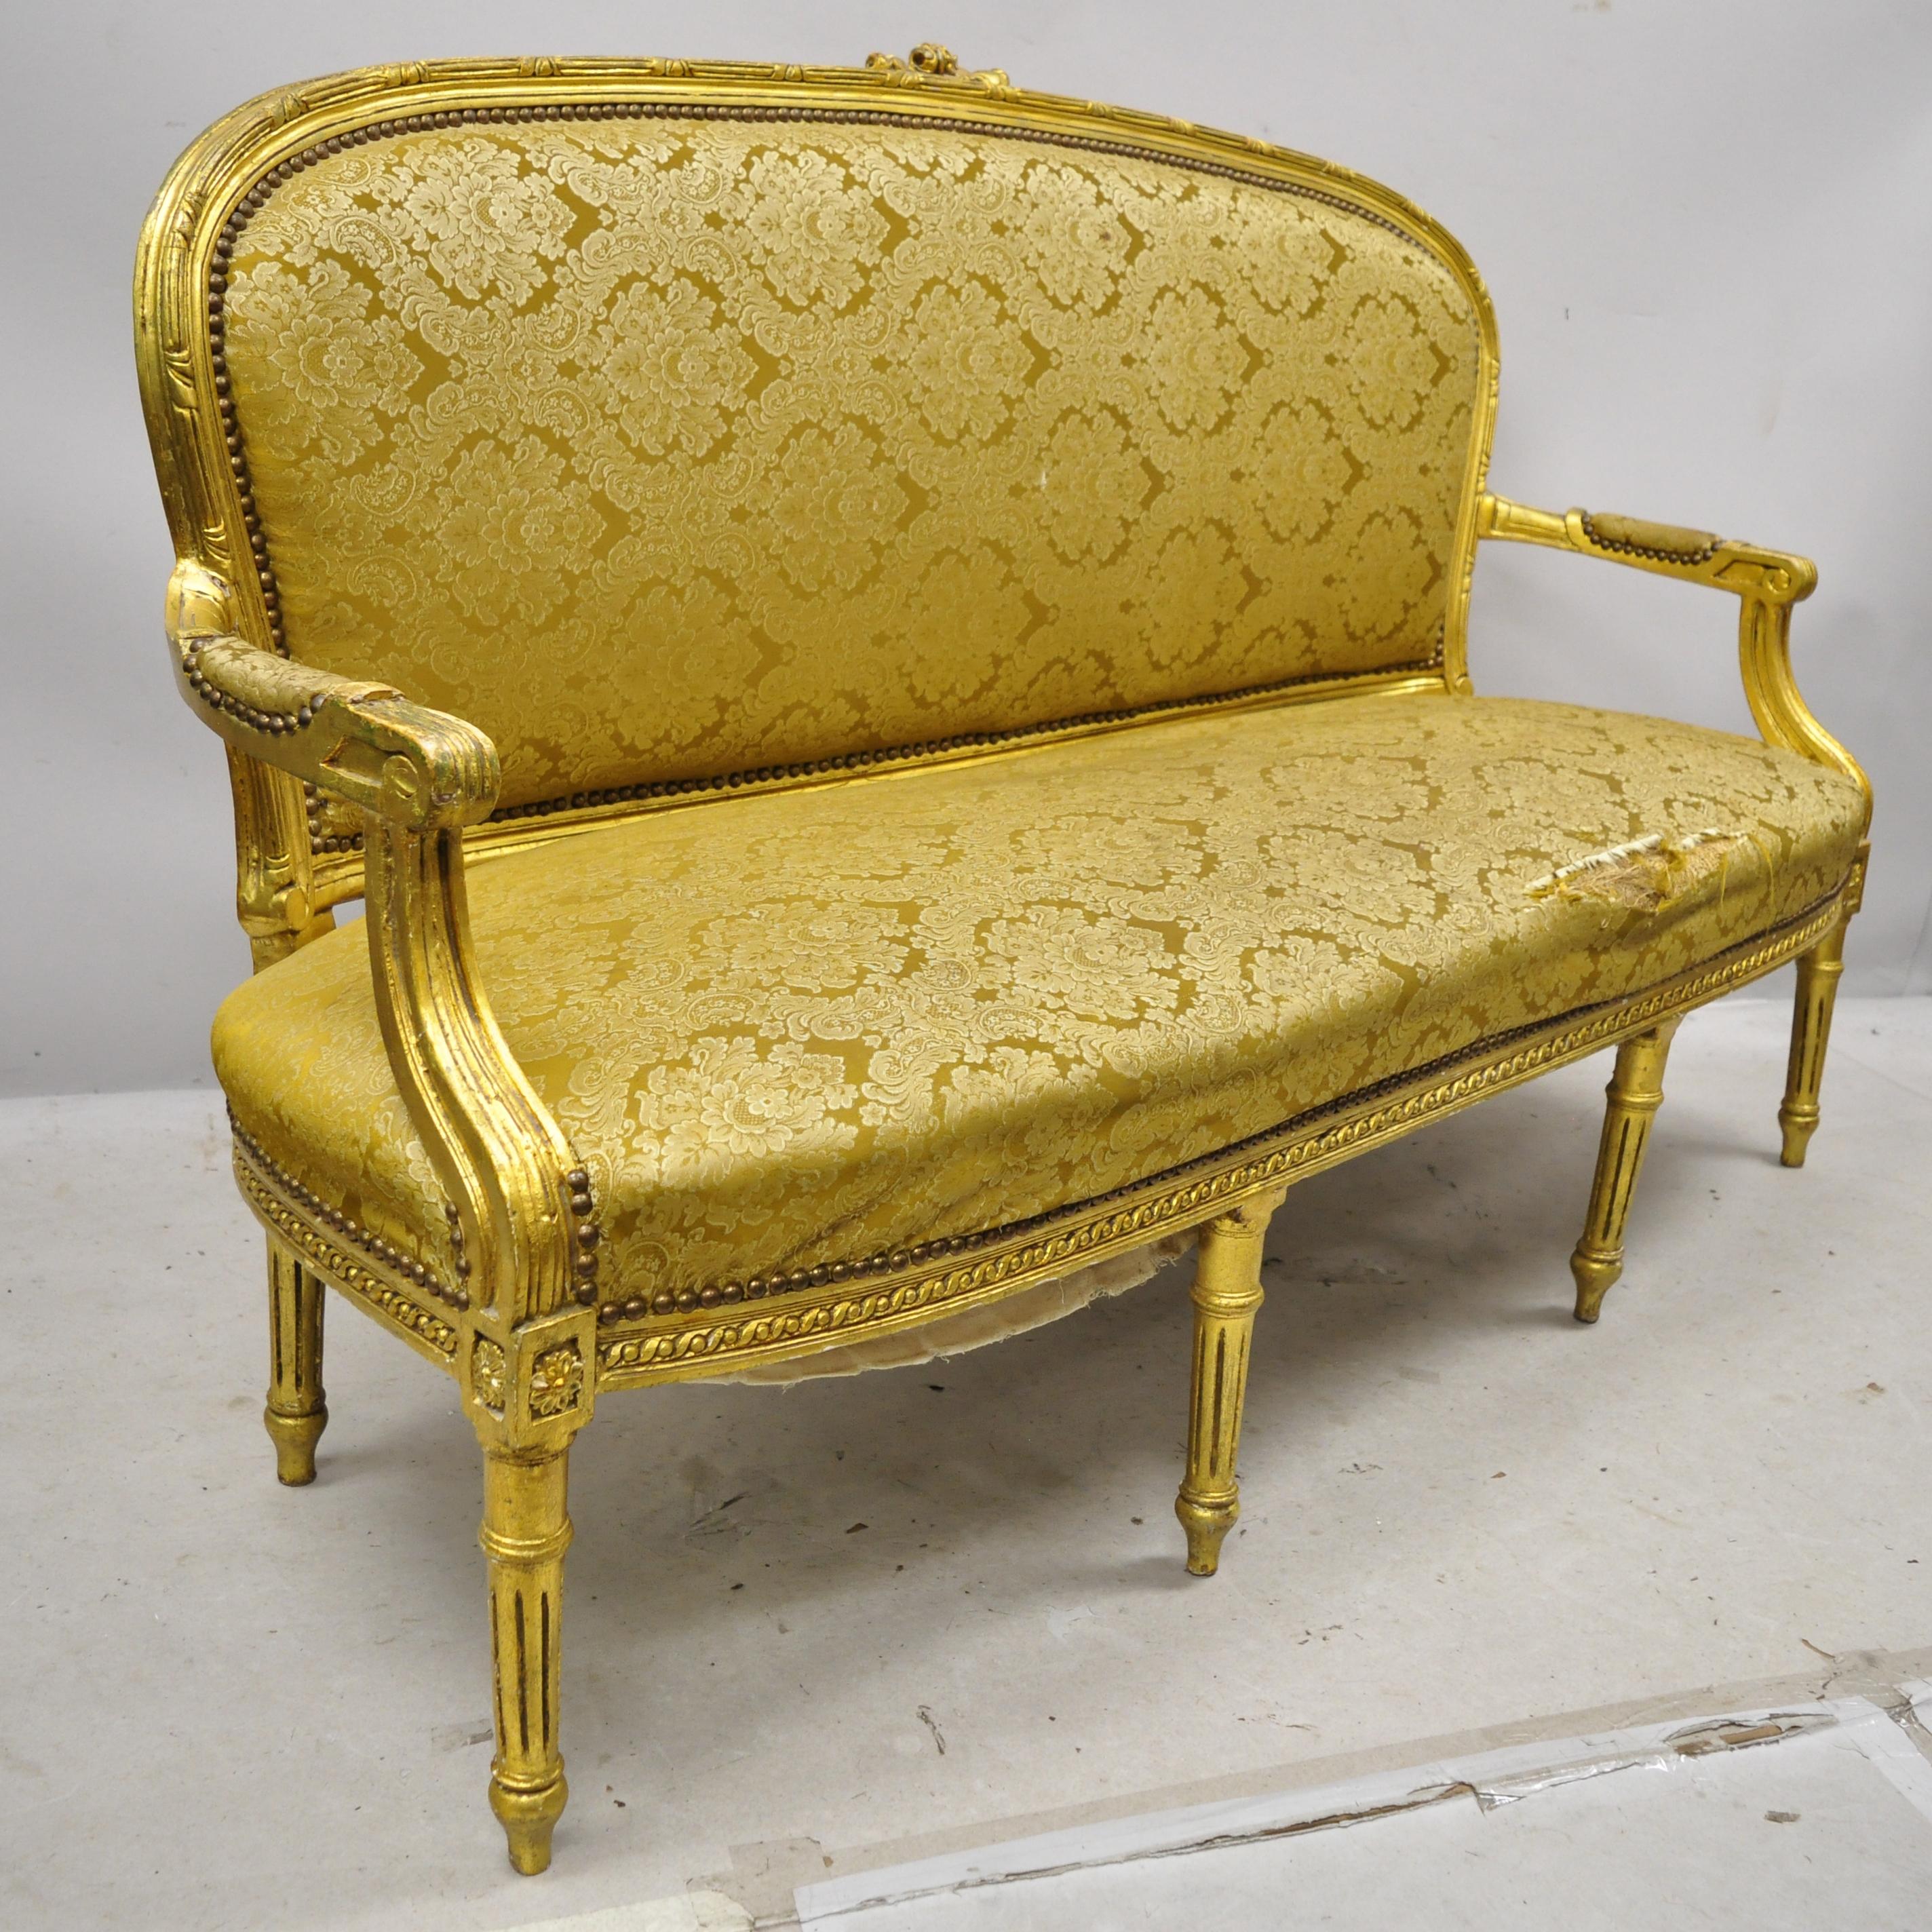 Canapé-lit vintage français de style Louis XVI à 6 pieds en feuille d'or. Cette pièce se caractérise par une finition dorée à la feuille d'or, un cadre en bois massif, des détails joliment sculptés, 6 pieds cabriole, un style et une forme